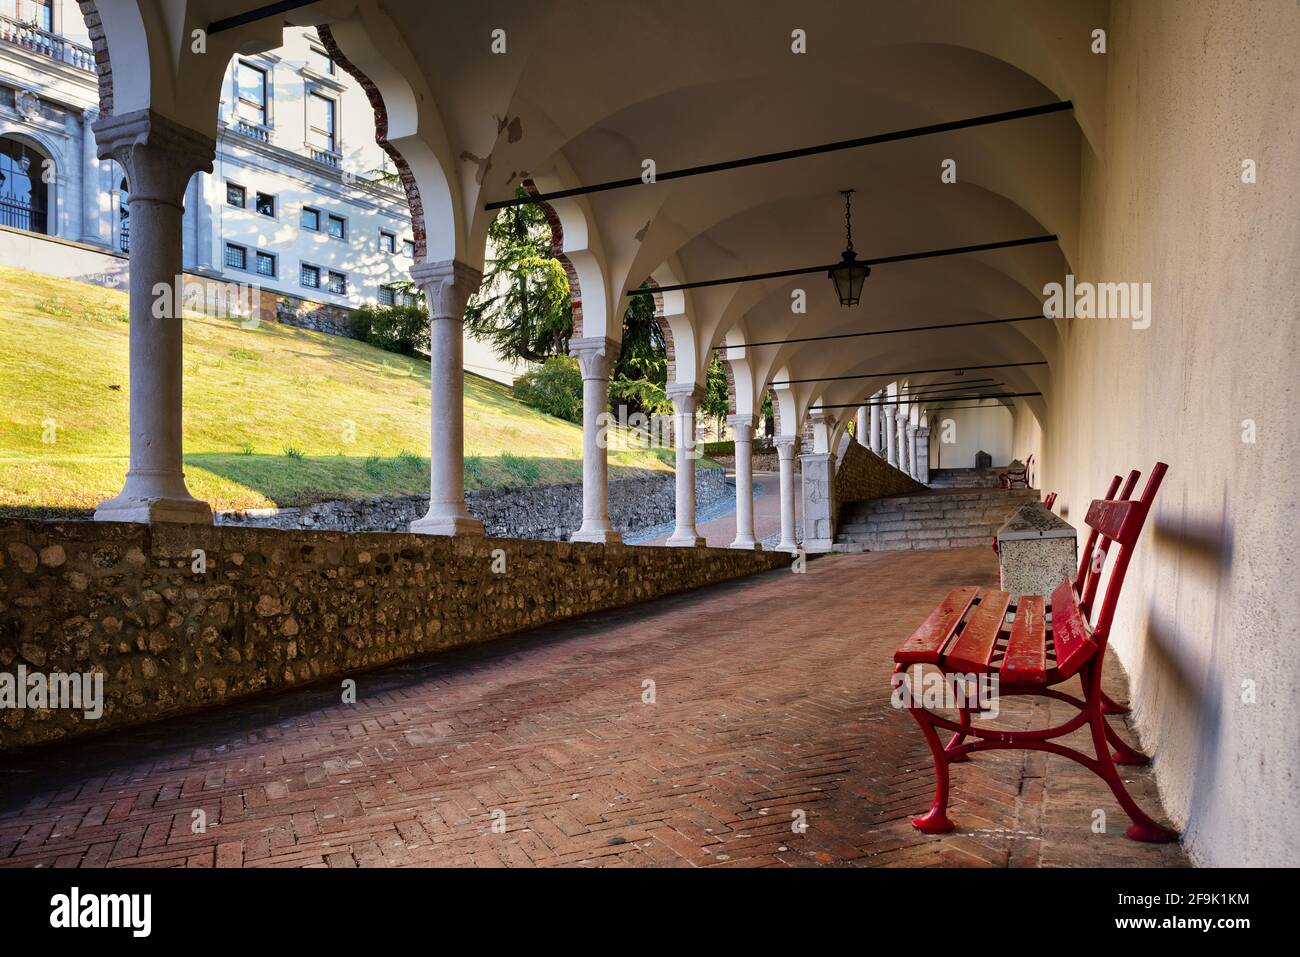 Vista su un bellissimo portico italiano che conduce al castello cittadino di Udine. Architettura storica italiana. Foto Stock